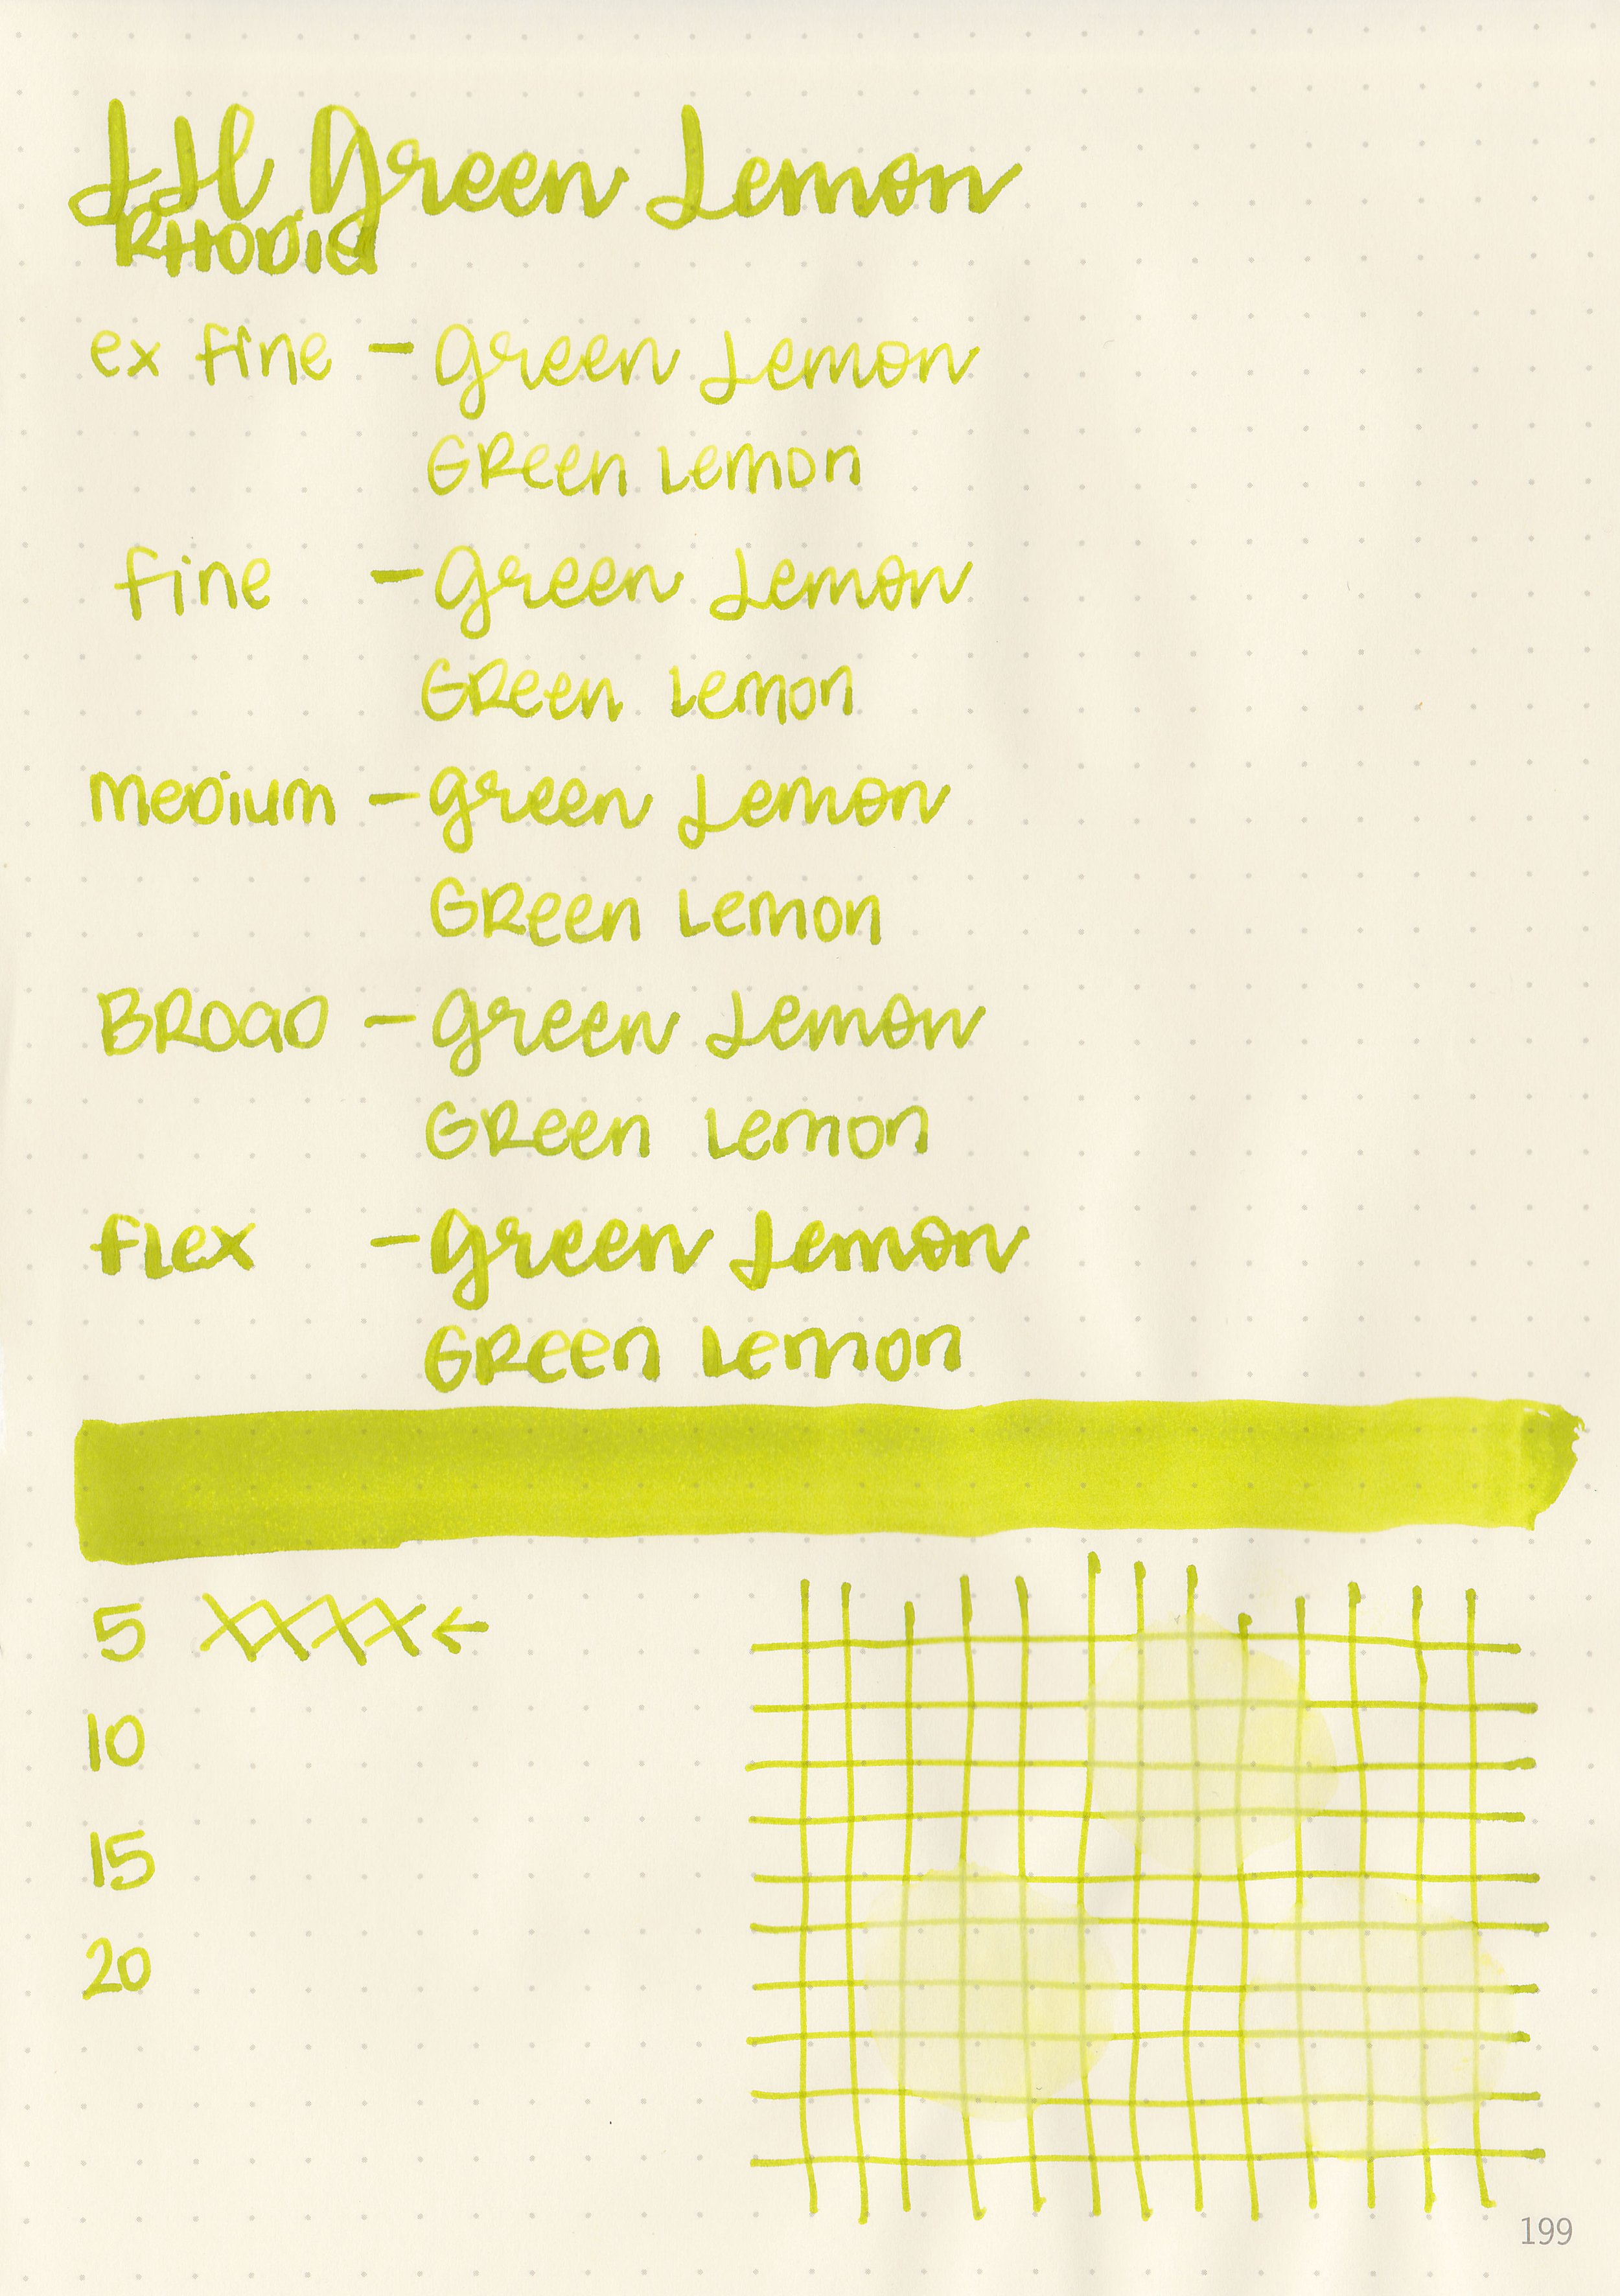 jh-green-lemon-5.jpg